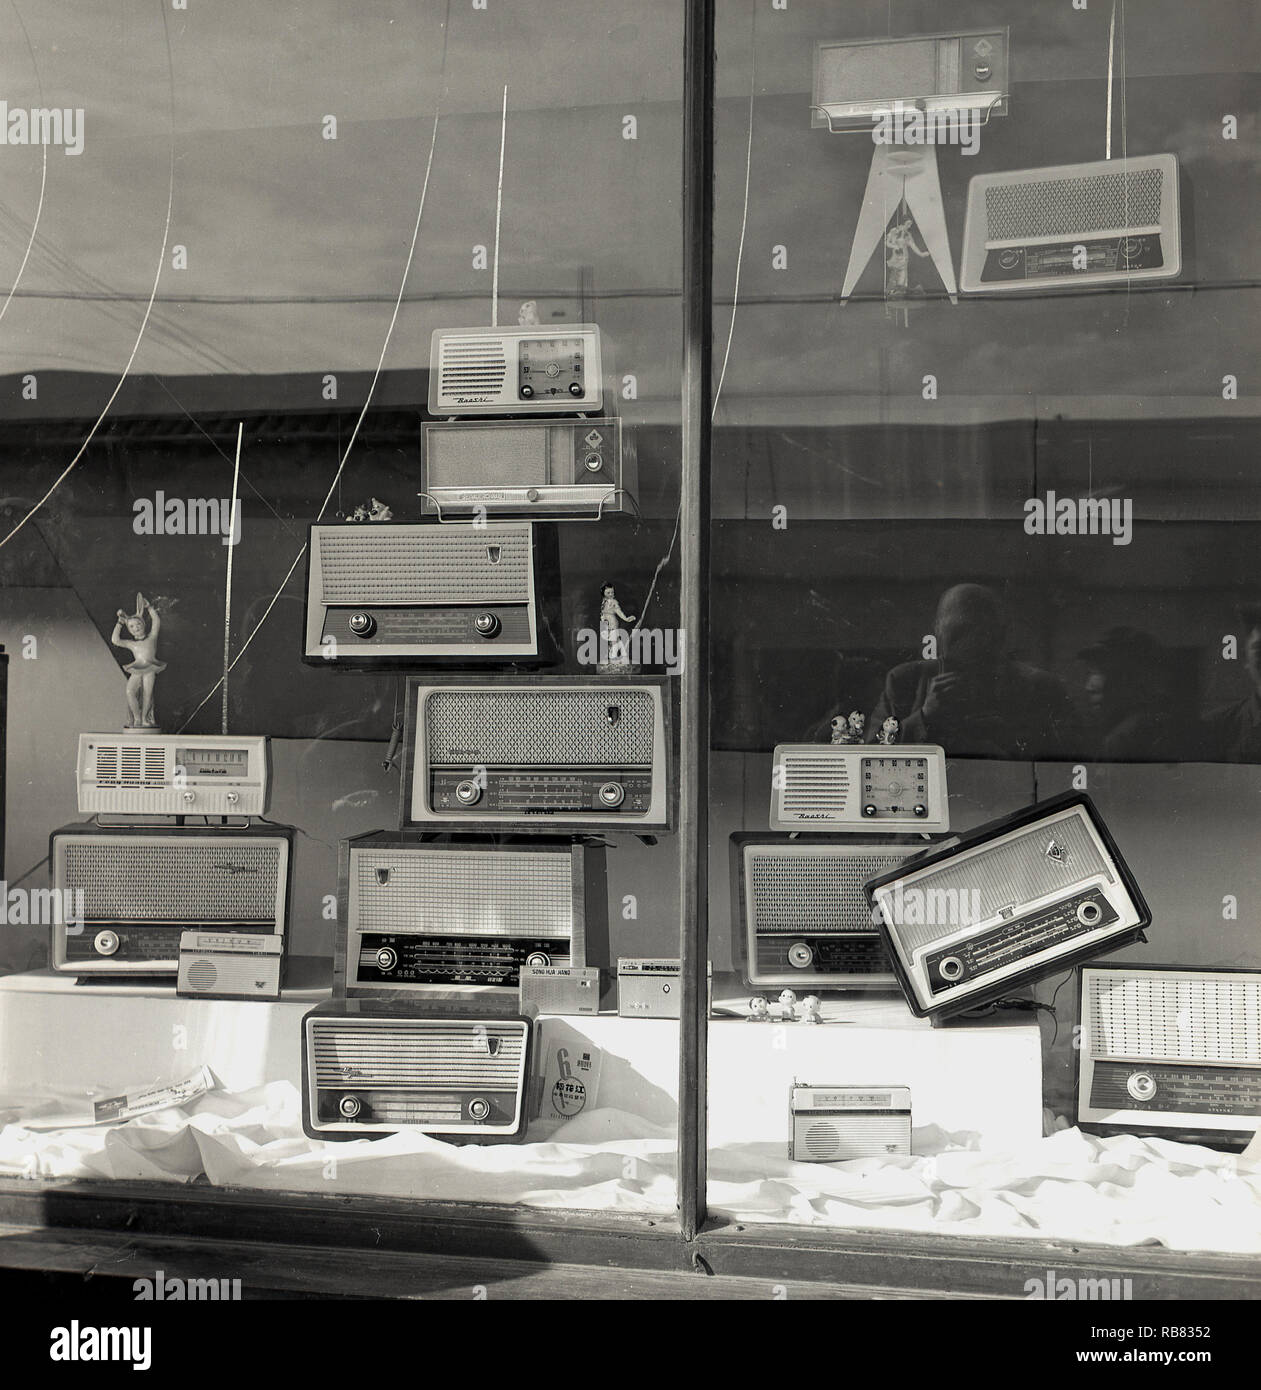 1950s, historisch, Peking, China. Elektrisches Schaufenster mit einer Anzeige der neuesten Transistor-Radios. Anfang 1950s war das Transistorradio ein revolutionäres Stück Technologie, das den Menschen, insbesondere den jungen, erstmals musikalische Freiheit gab und die asiatischen Hersteller begannen, die ursprünglich aus den USA lizenzierte Technologie zu nutzen, um Konsumgüter zu wettbewerbsfähigen Preisen zu entwickeln. Stockfoto